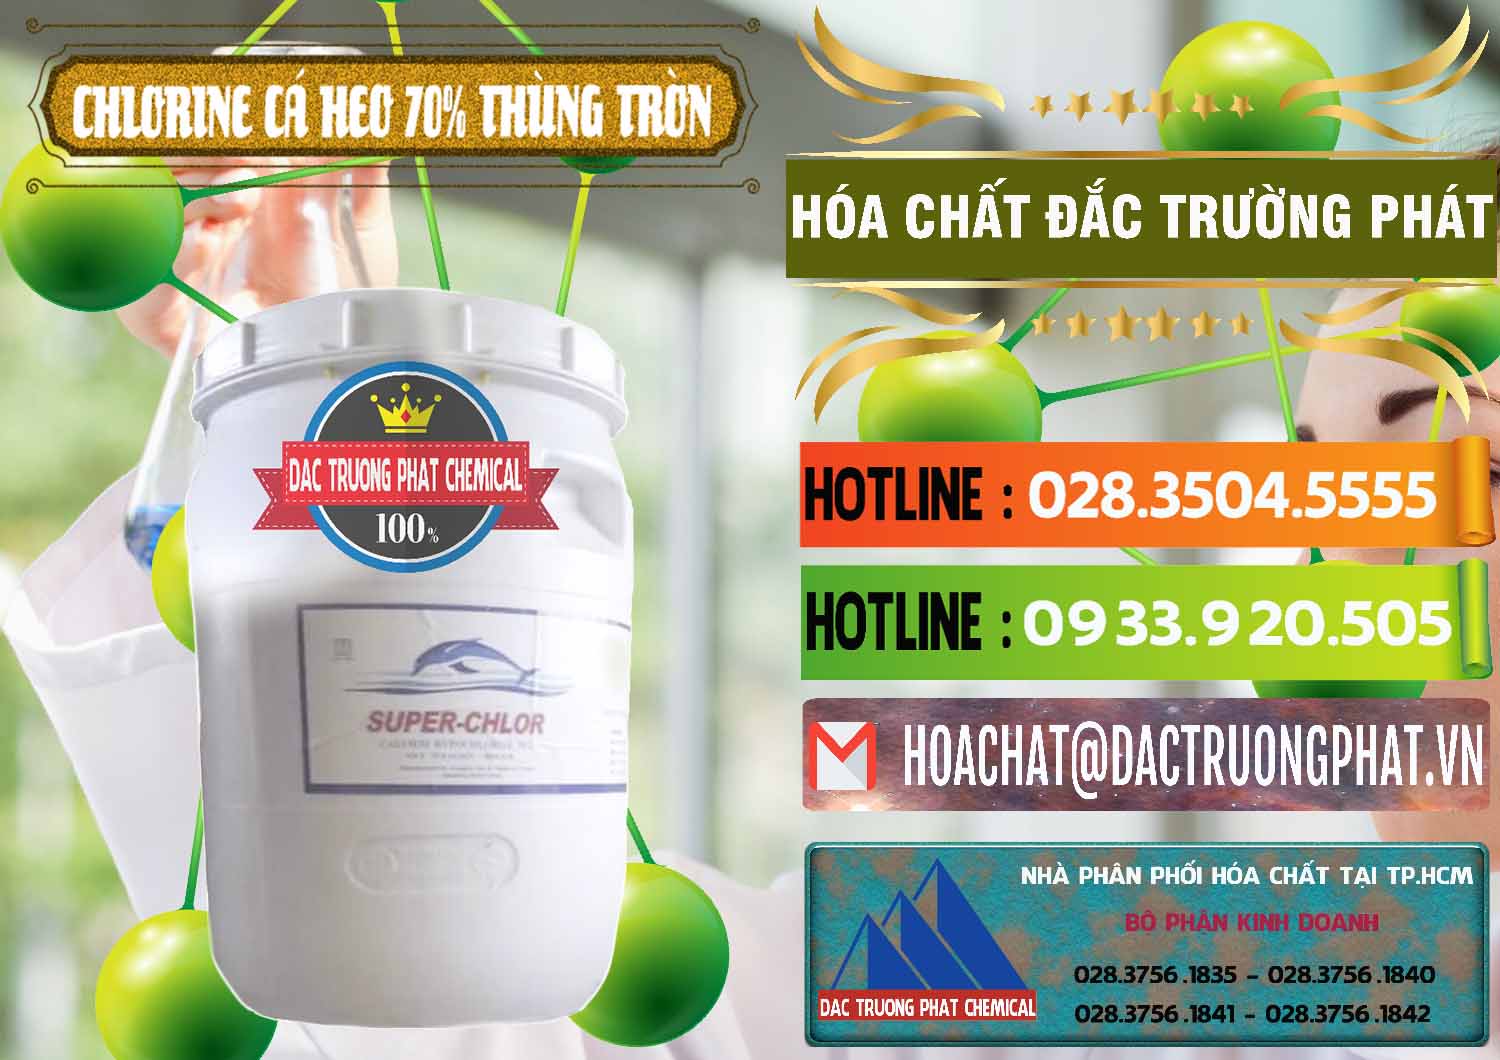 Nơi chuyên kinh doanh _ bán Clorin - Chlorine Cá Heo 70% Super Chlor Thùng Tròn Nắp Trắng Trung Quốc China - 0239 - Nơi cung cấp và nhập khẩu hóa chất tại TP.HCM - cungcaphoachat.com.vn